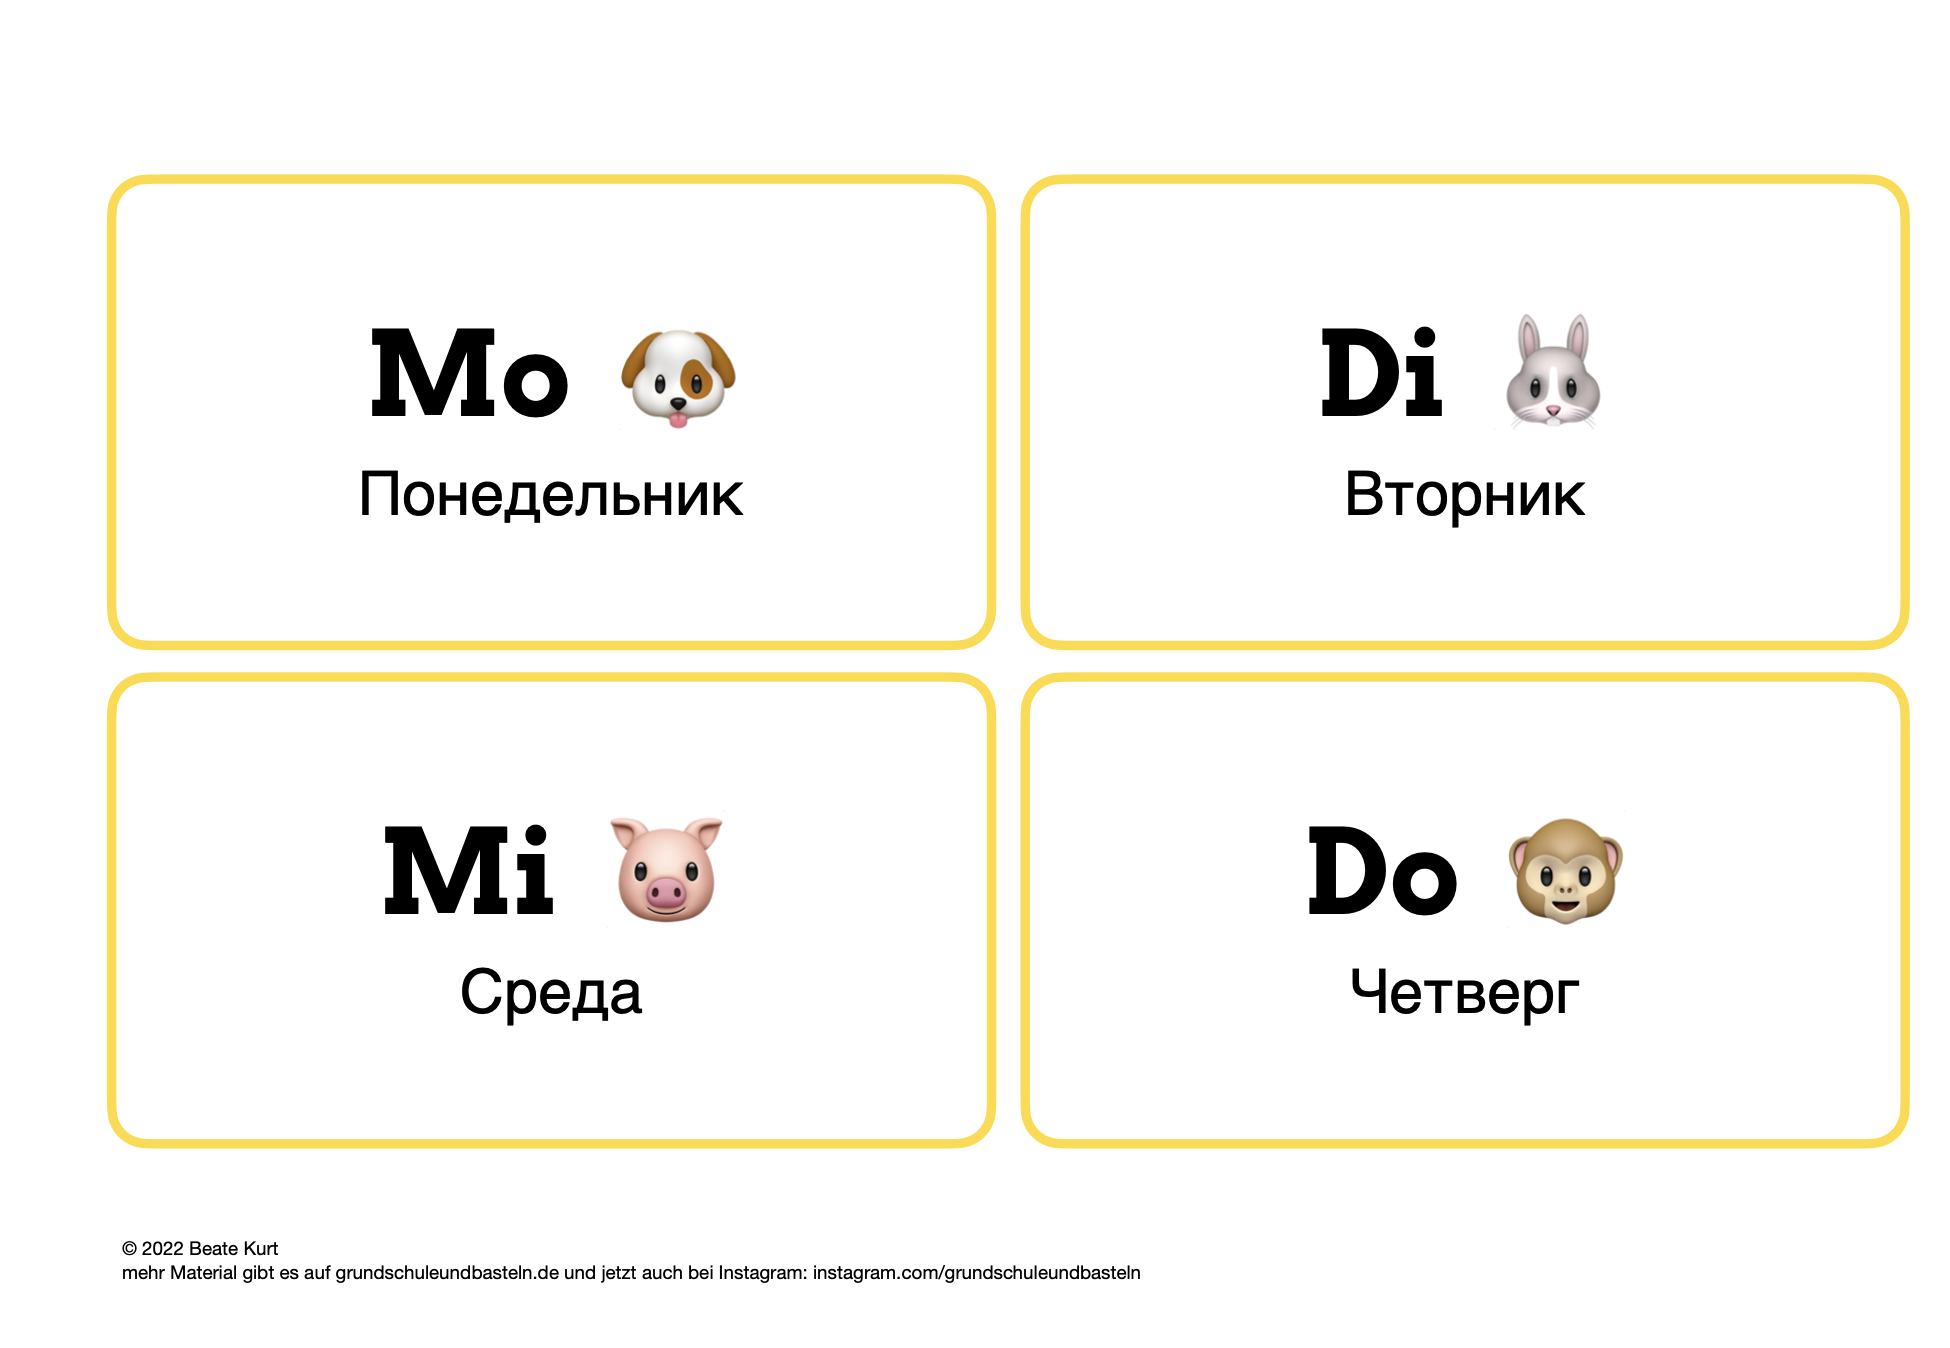  Arbeitsmaterial DAZ ukrainische Kinder lernen Deutsch 